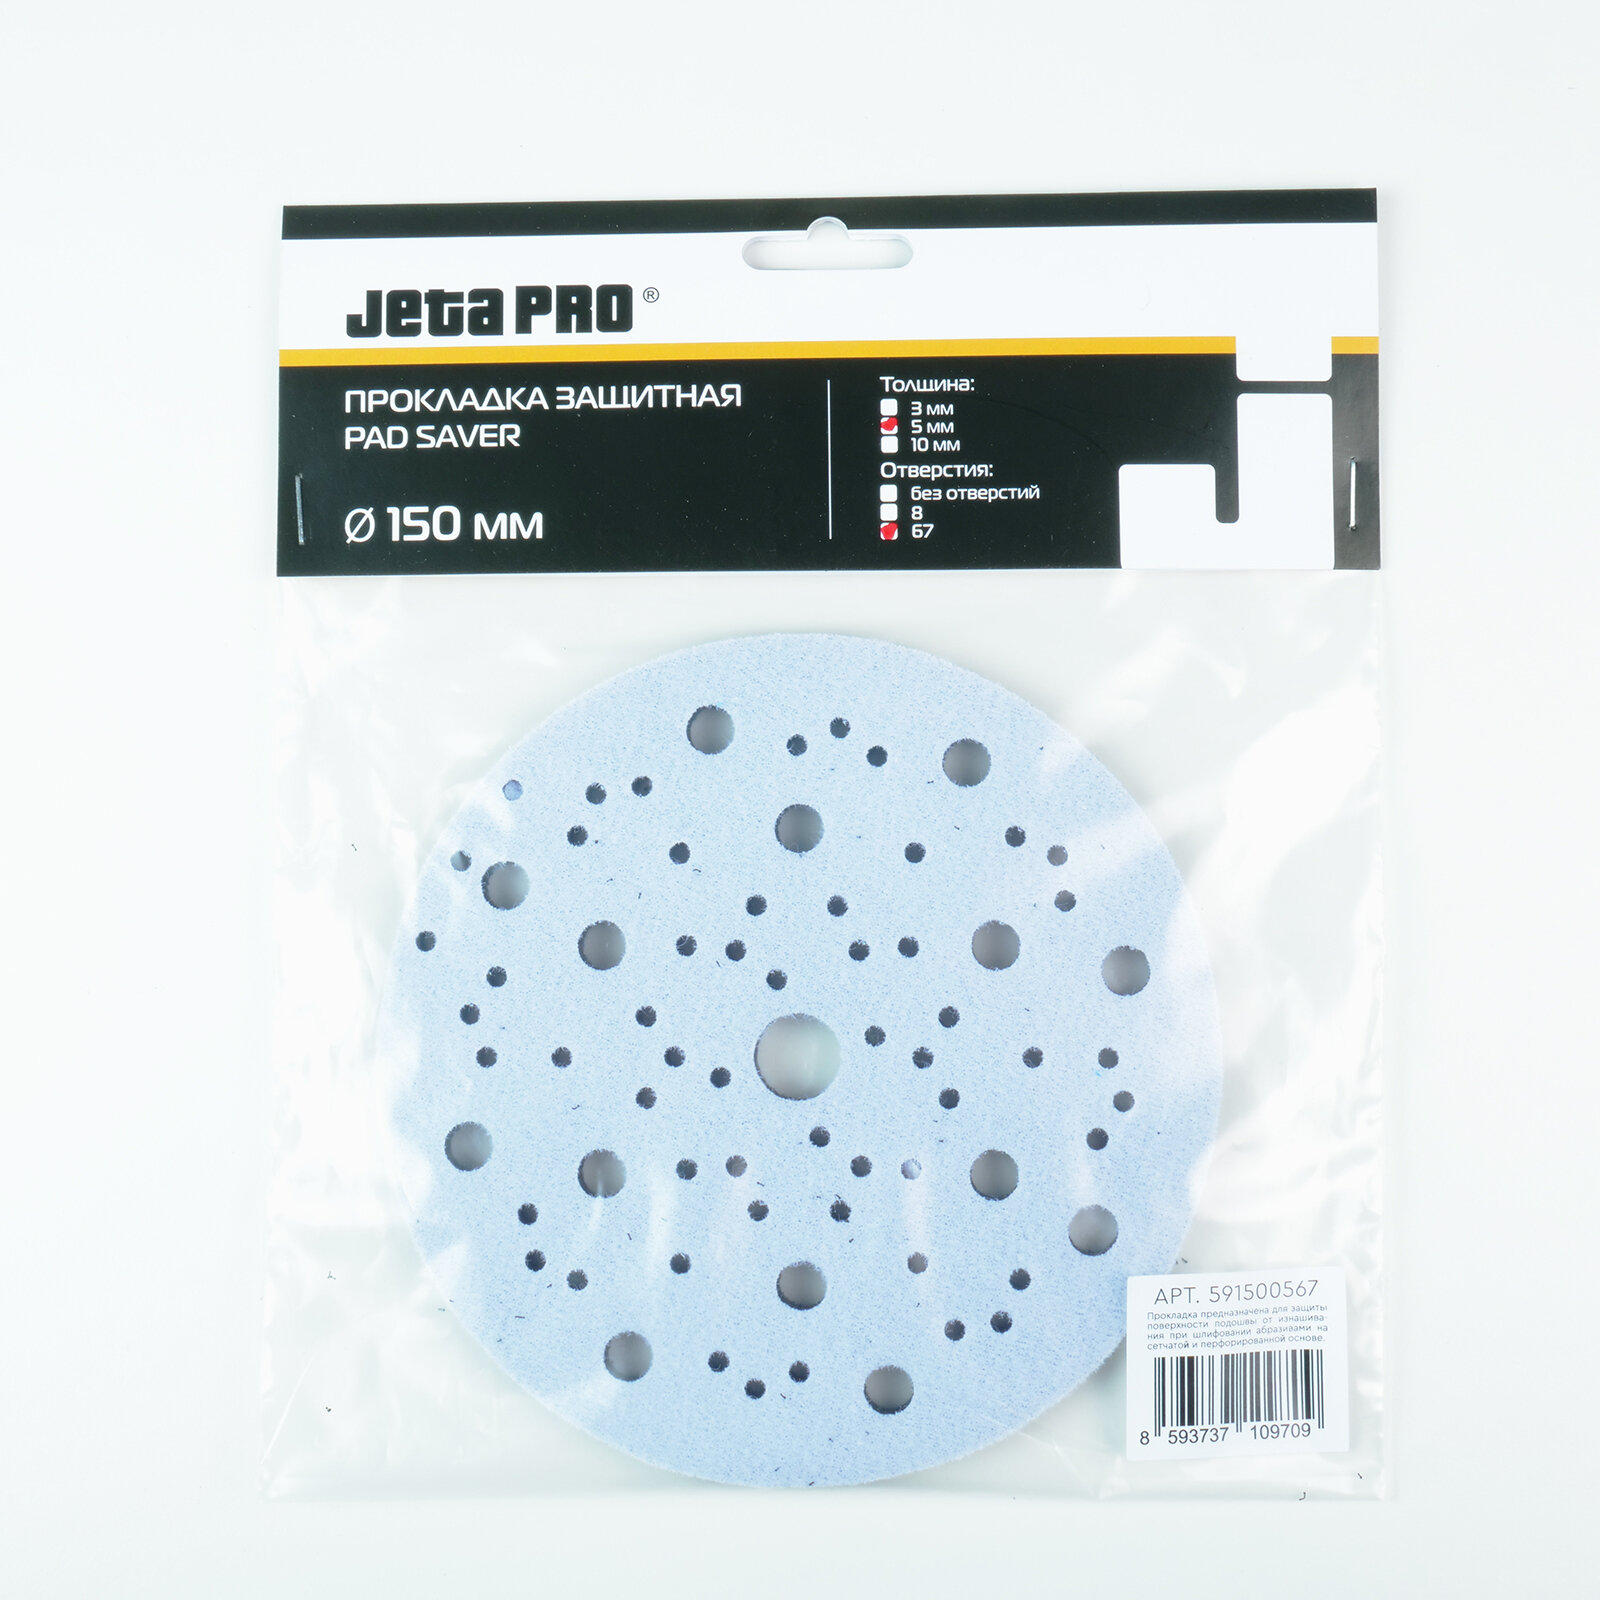 JETA PRO Прокладка защитная 150мм 67 отверстий на поролоне 5мм (для машинки 150мм)